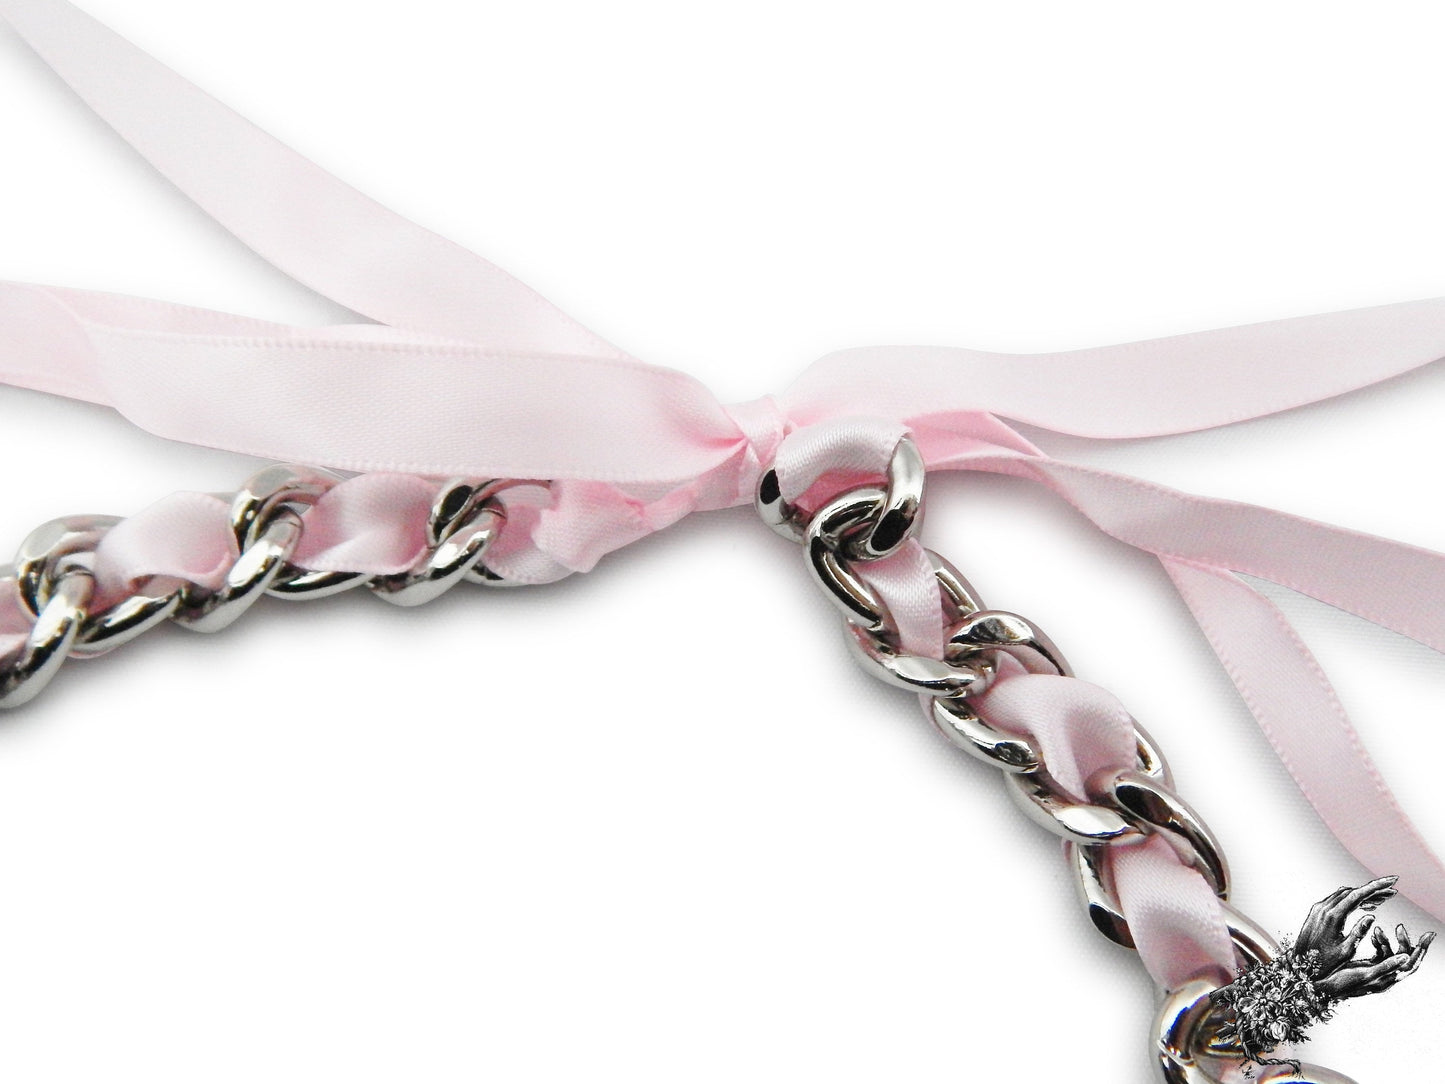 Pink Ribbon Chain and Heart Padlock Choker - LARGE SIZE